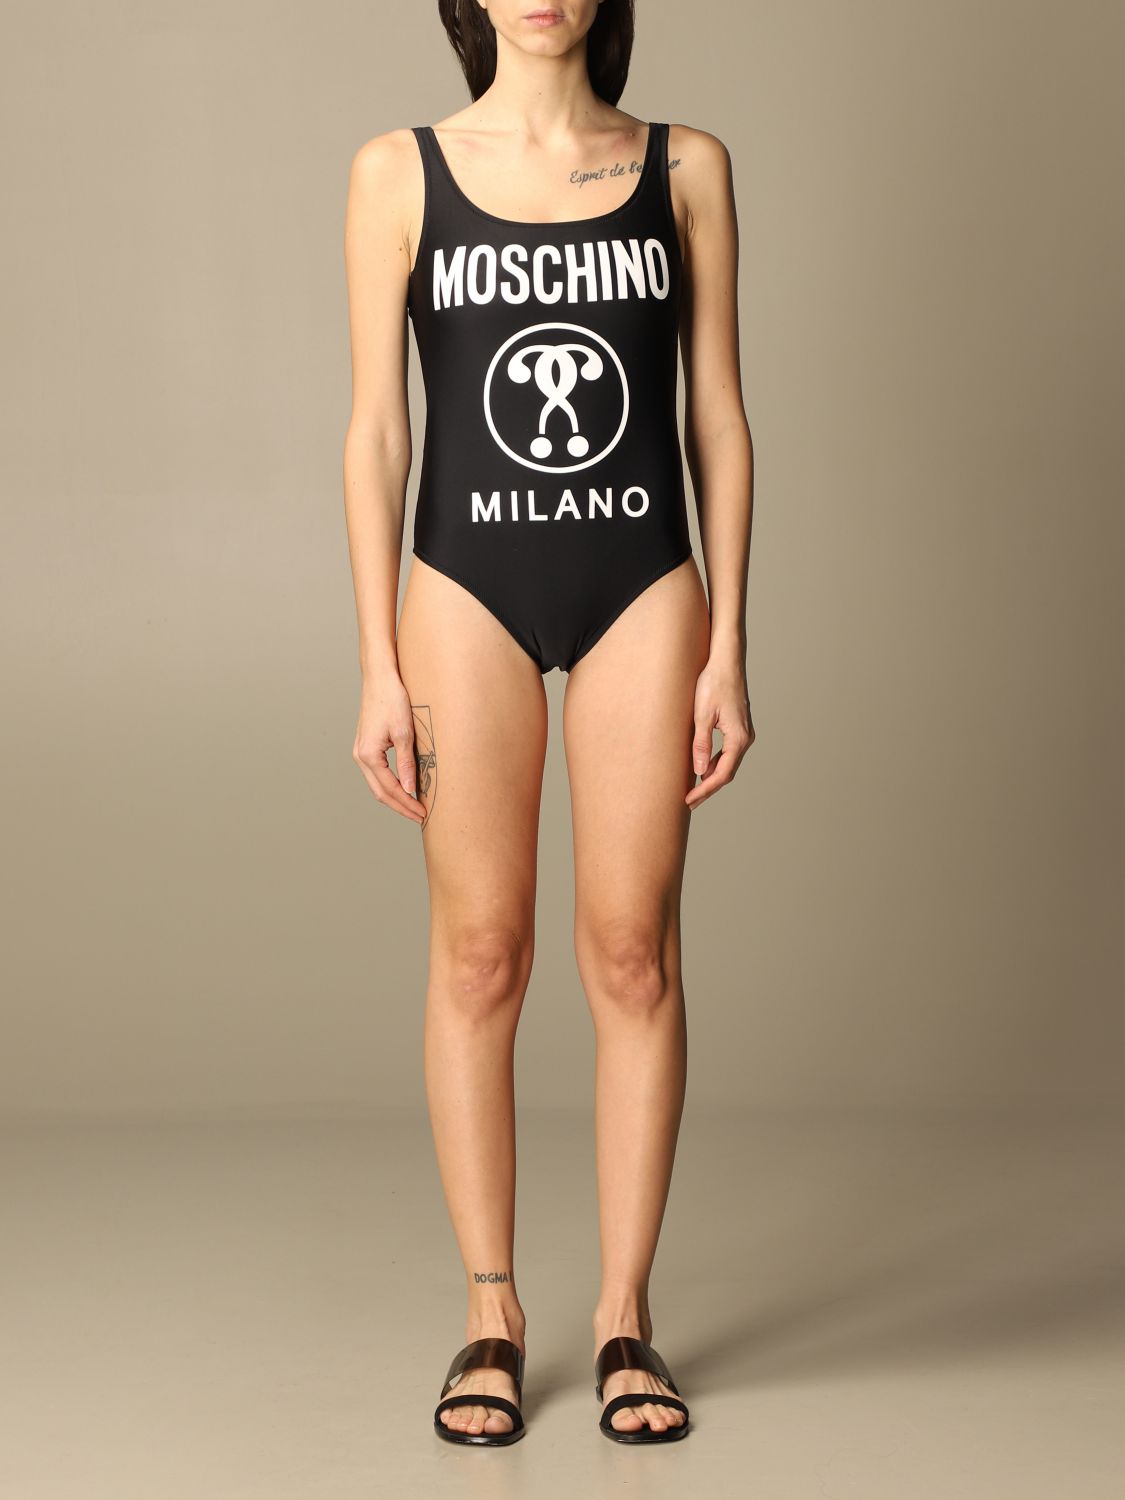 moschino black swimsuit